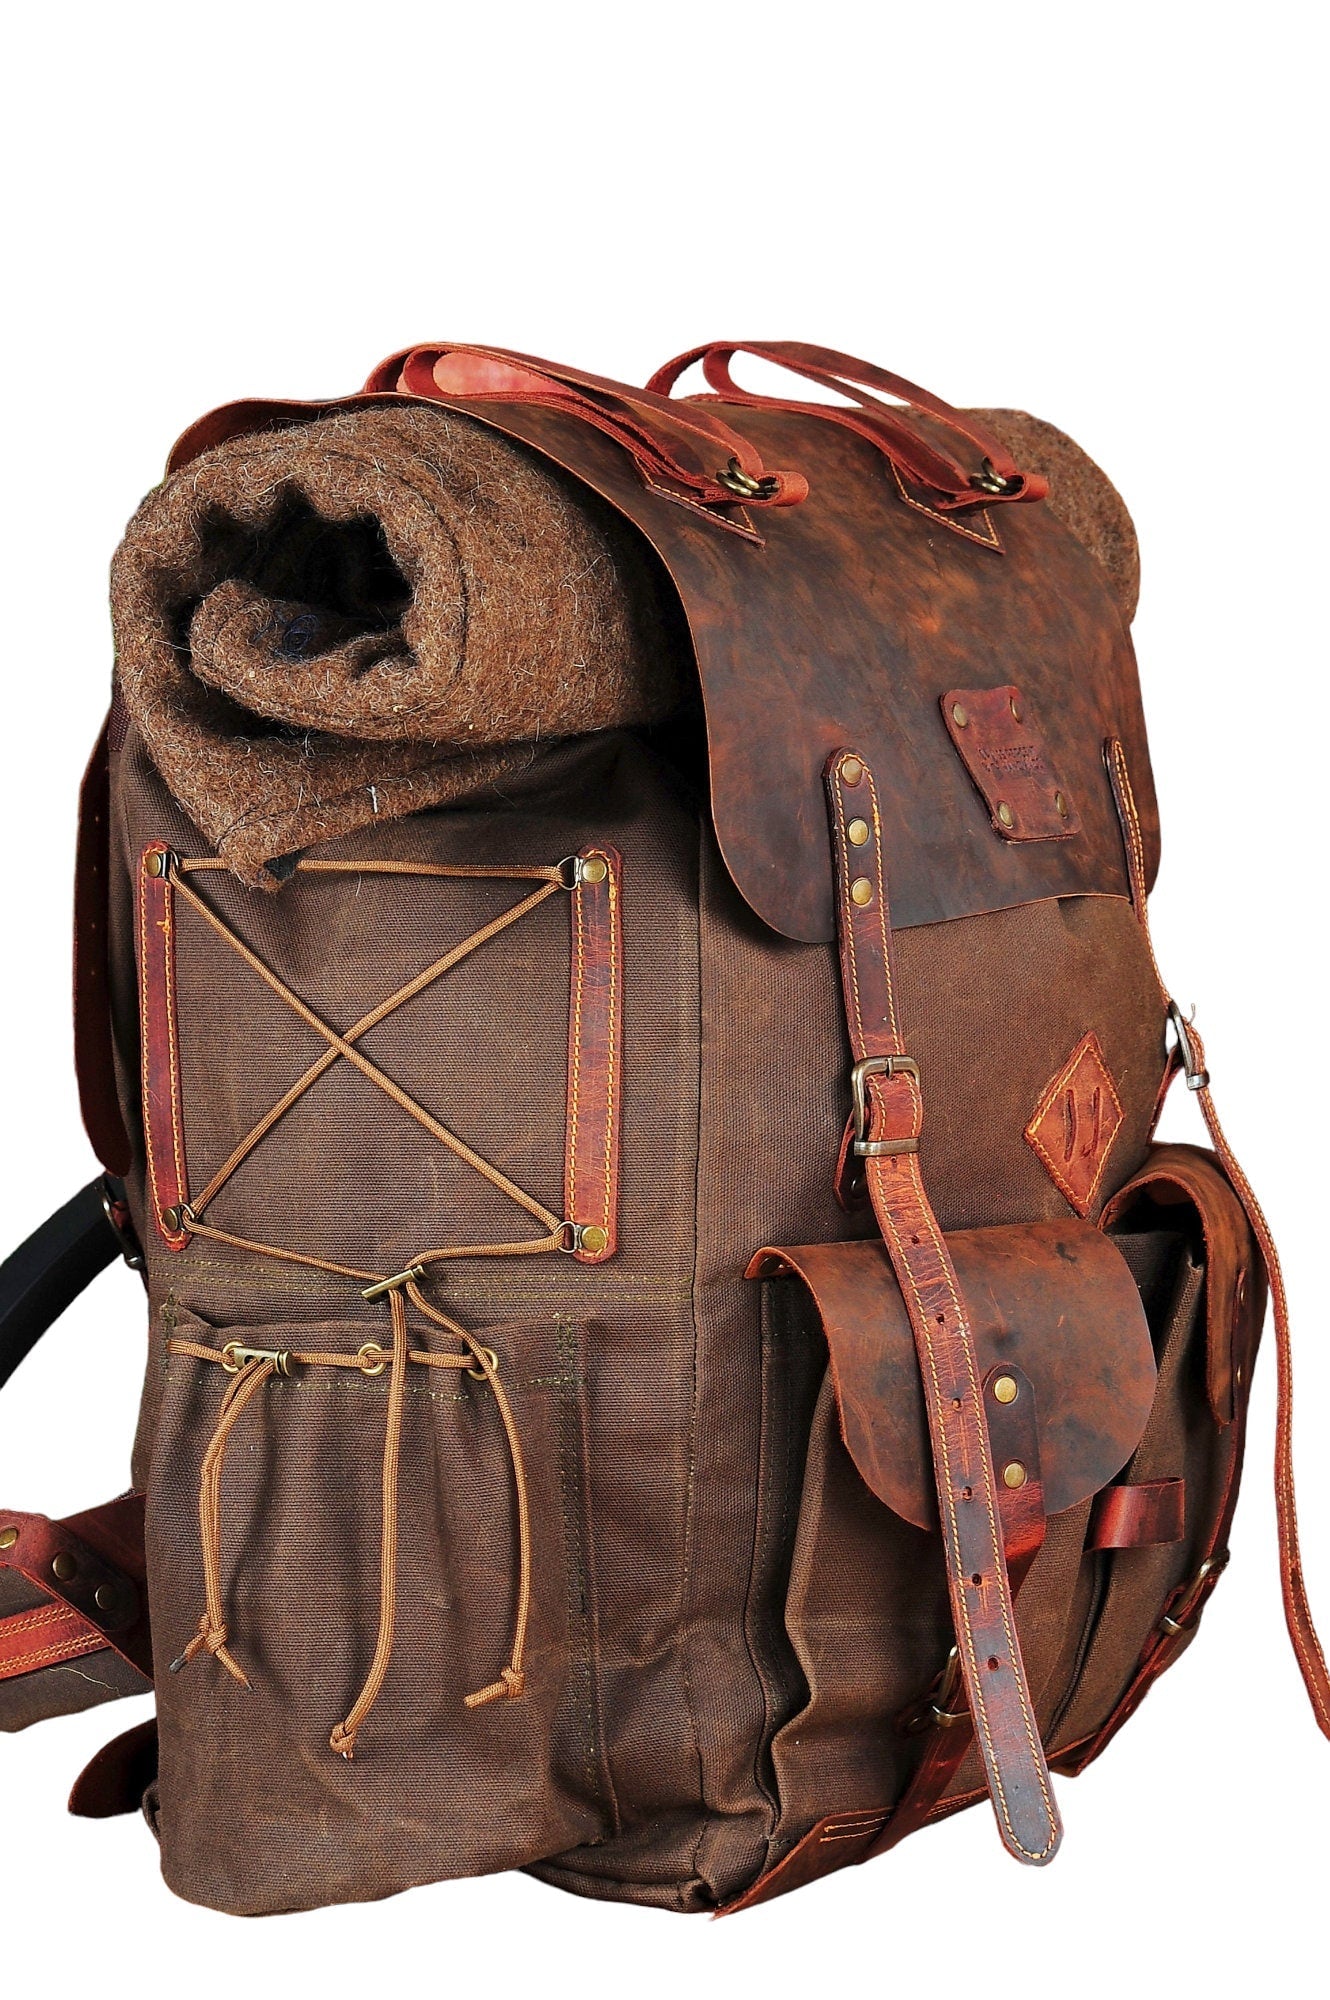 Hiking | Leather Flap | Hiking Backpack | Hiking Bag | Leather Canvas Backpack | Leather | Canvas | Camping Backpack | Camping | Rucksack bushcraft - camping - hiking backpack 99percenthandmade 30 Liters Brown 